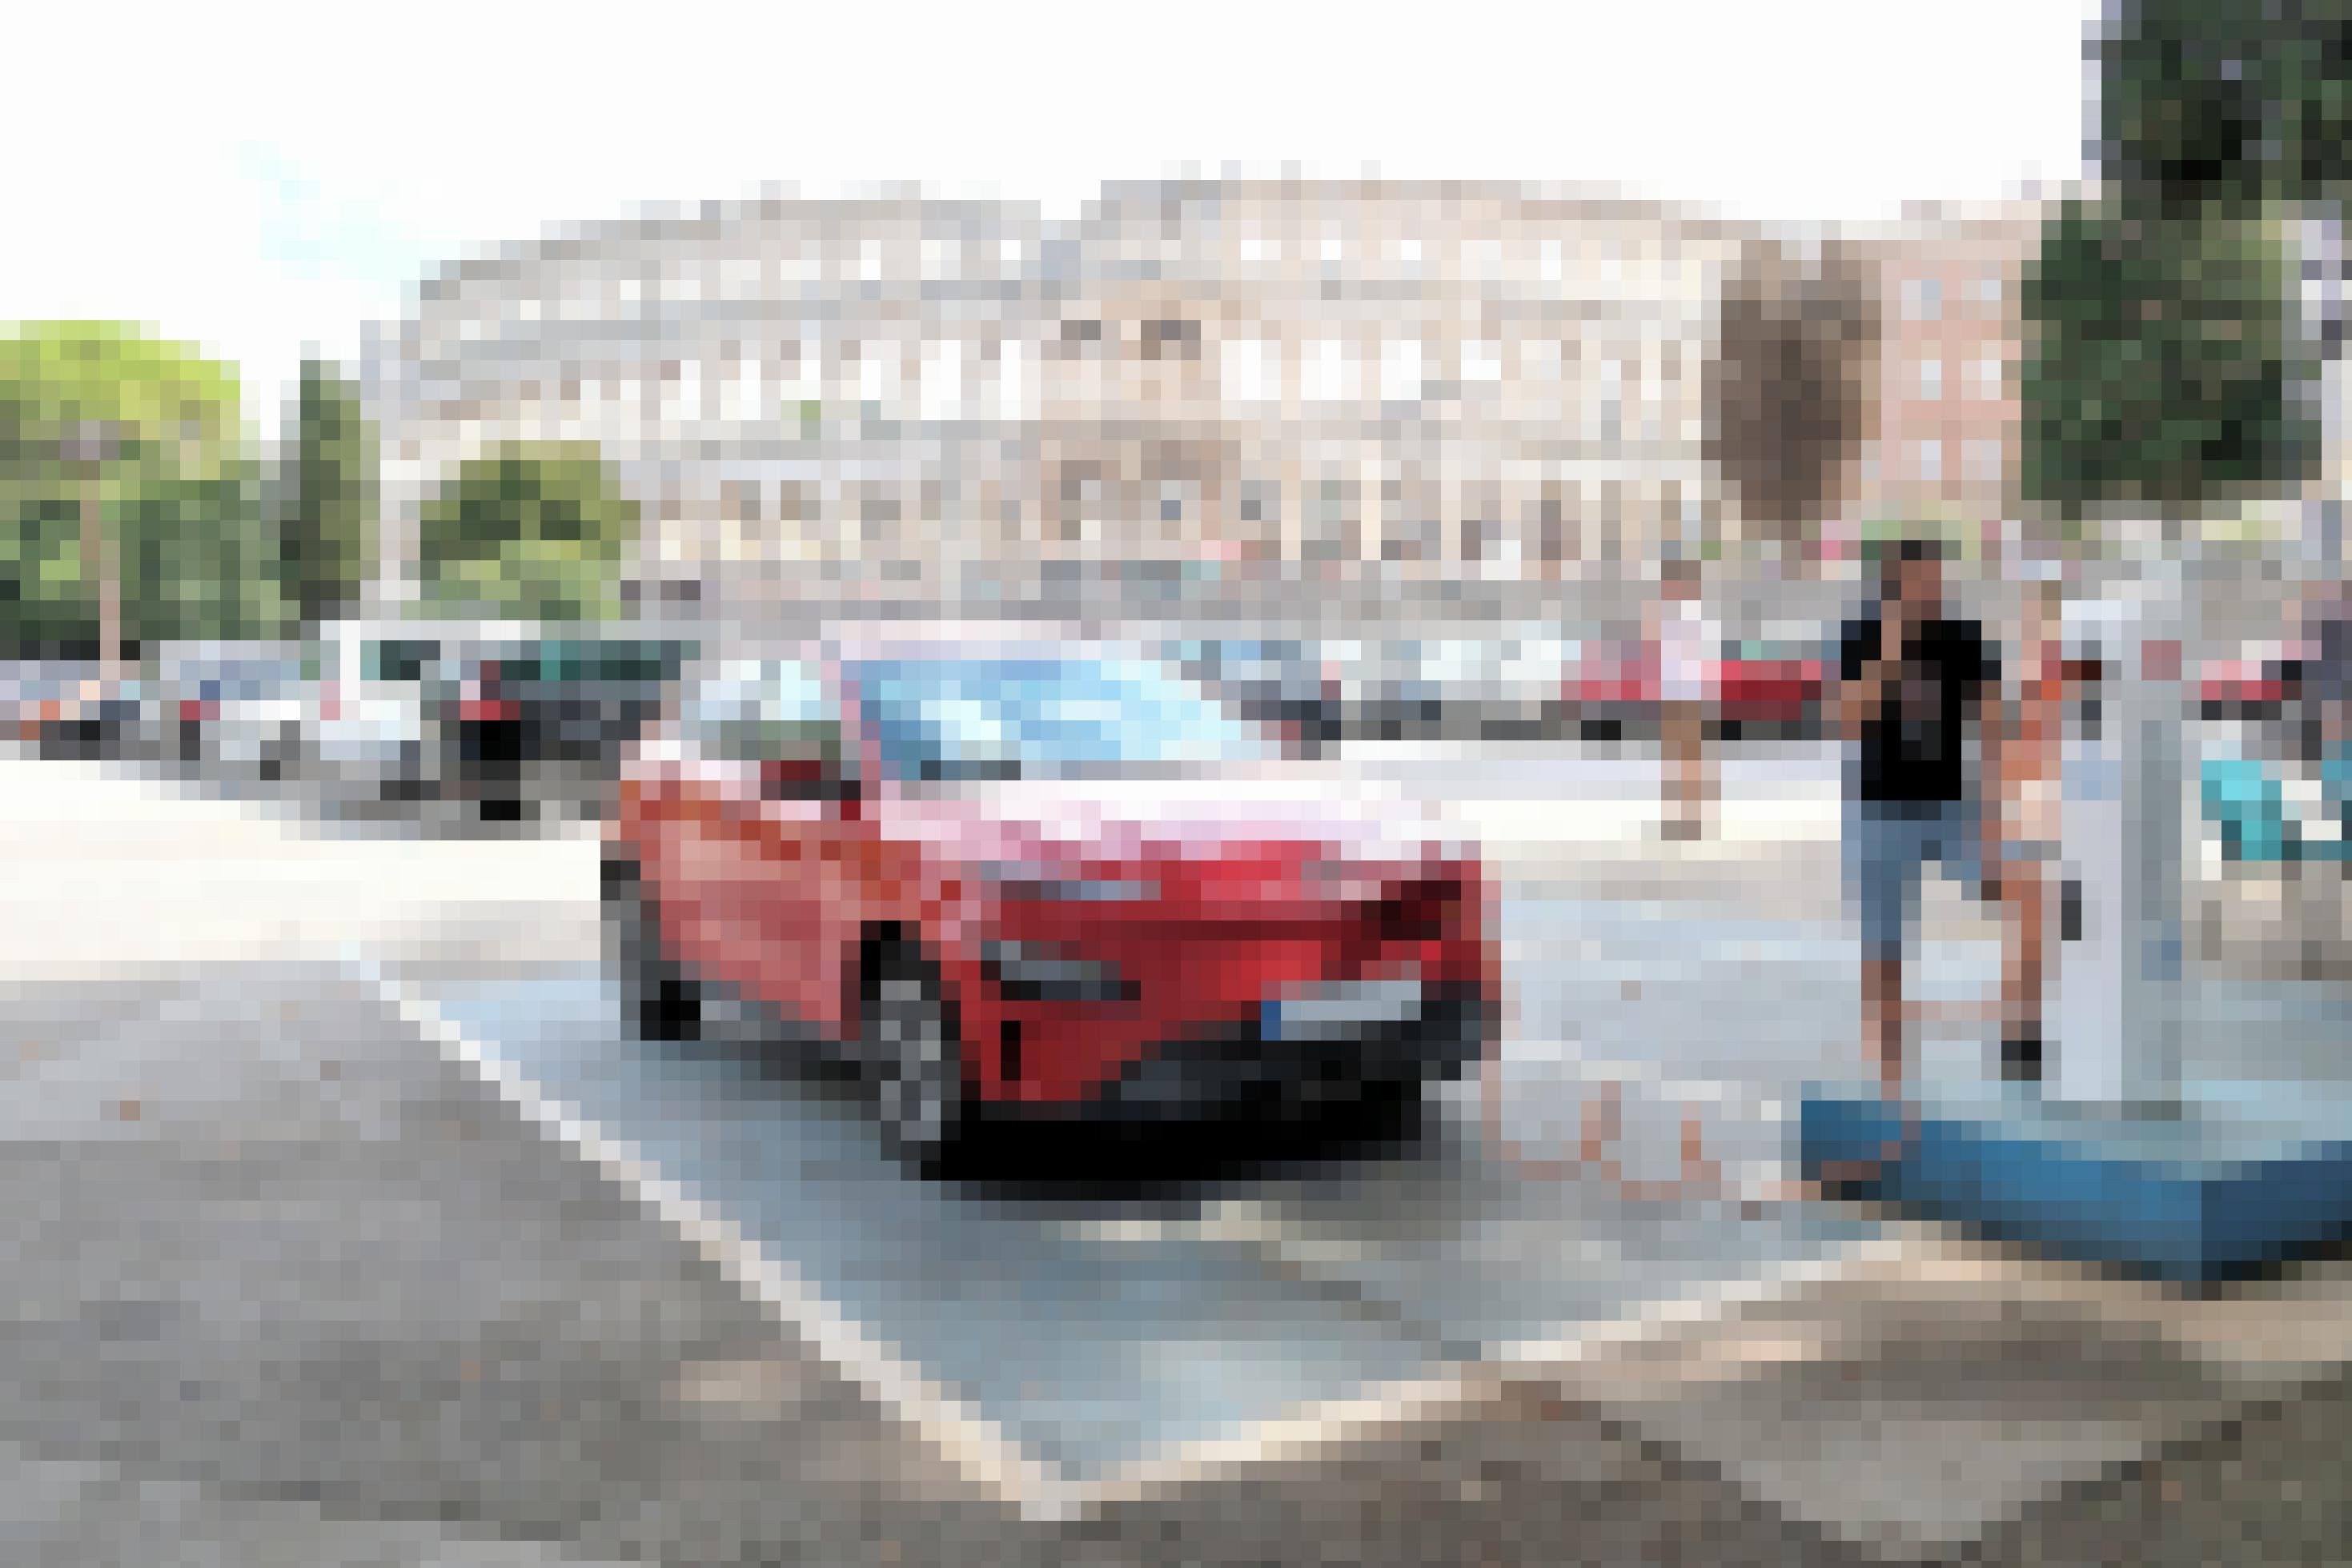 Ein Elektroauto steht auf einem Parkplatz und ist mit einer Ladestation verbunden. Im Hintergrund ist ein römisches Amphi-Theater zu sehen.